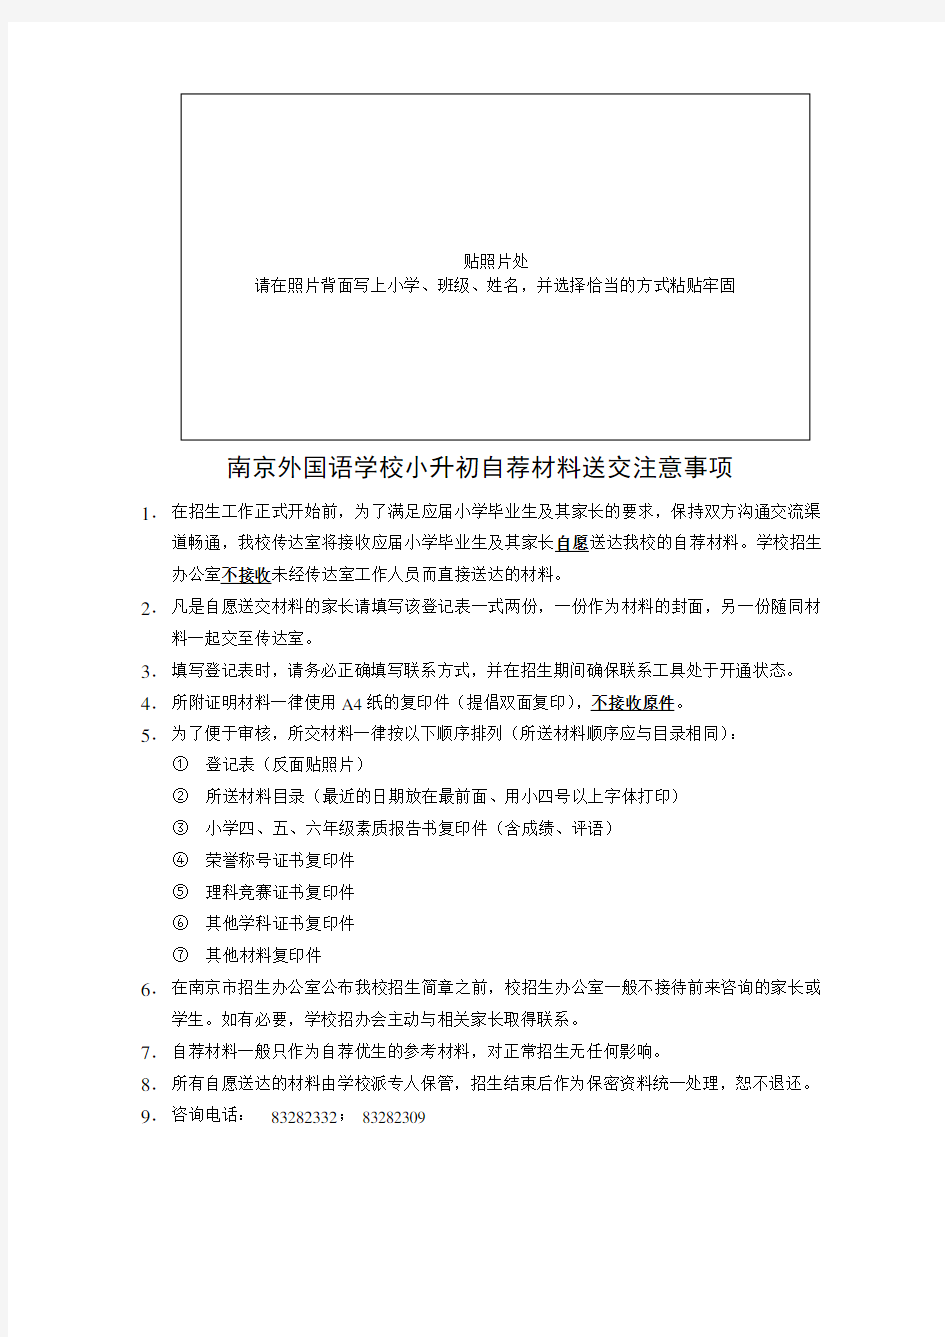 南京外国语学校小升初自荐材料登记表